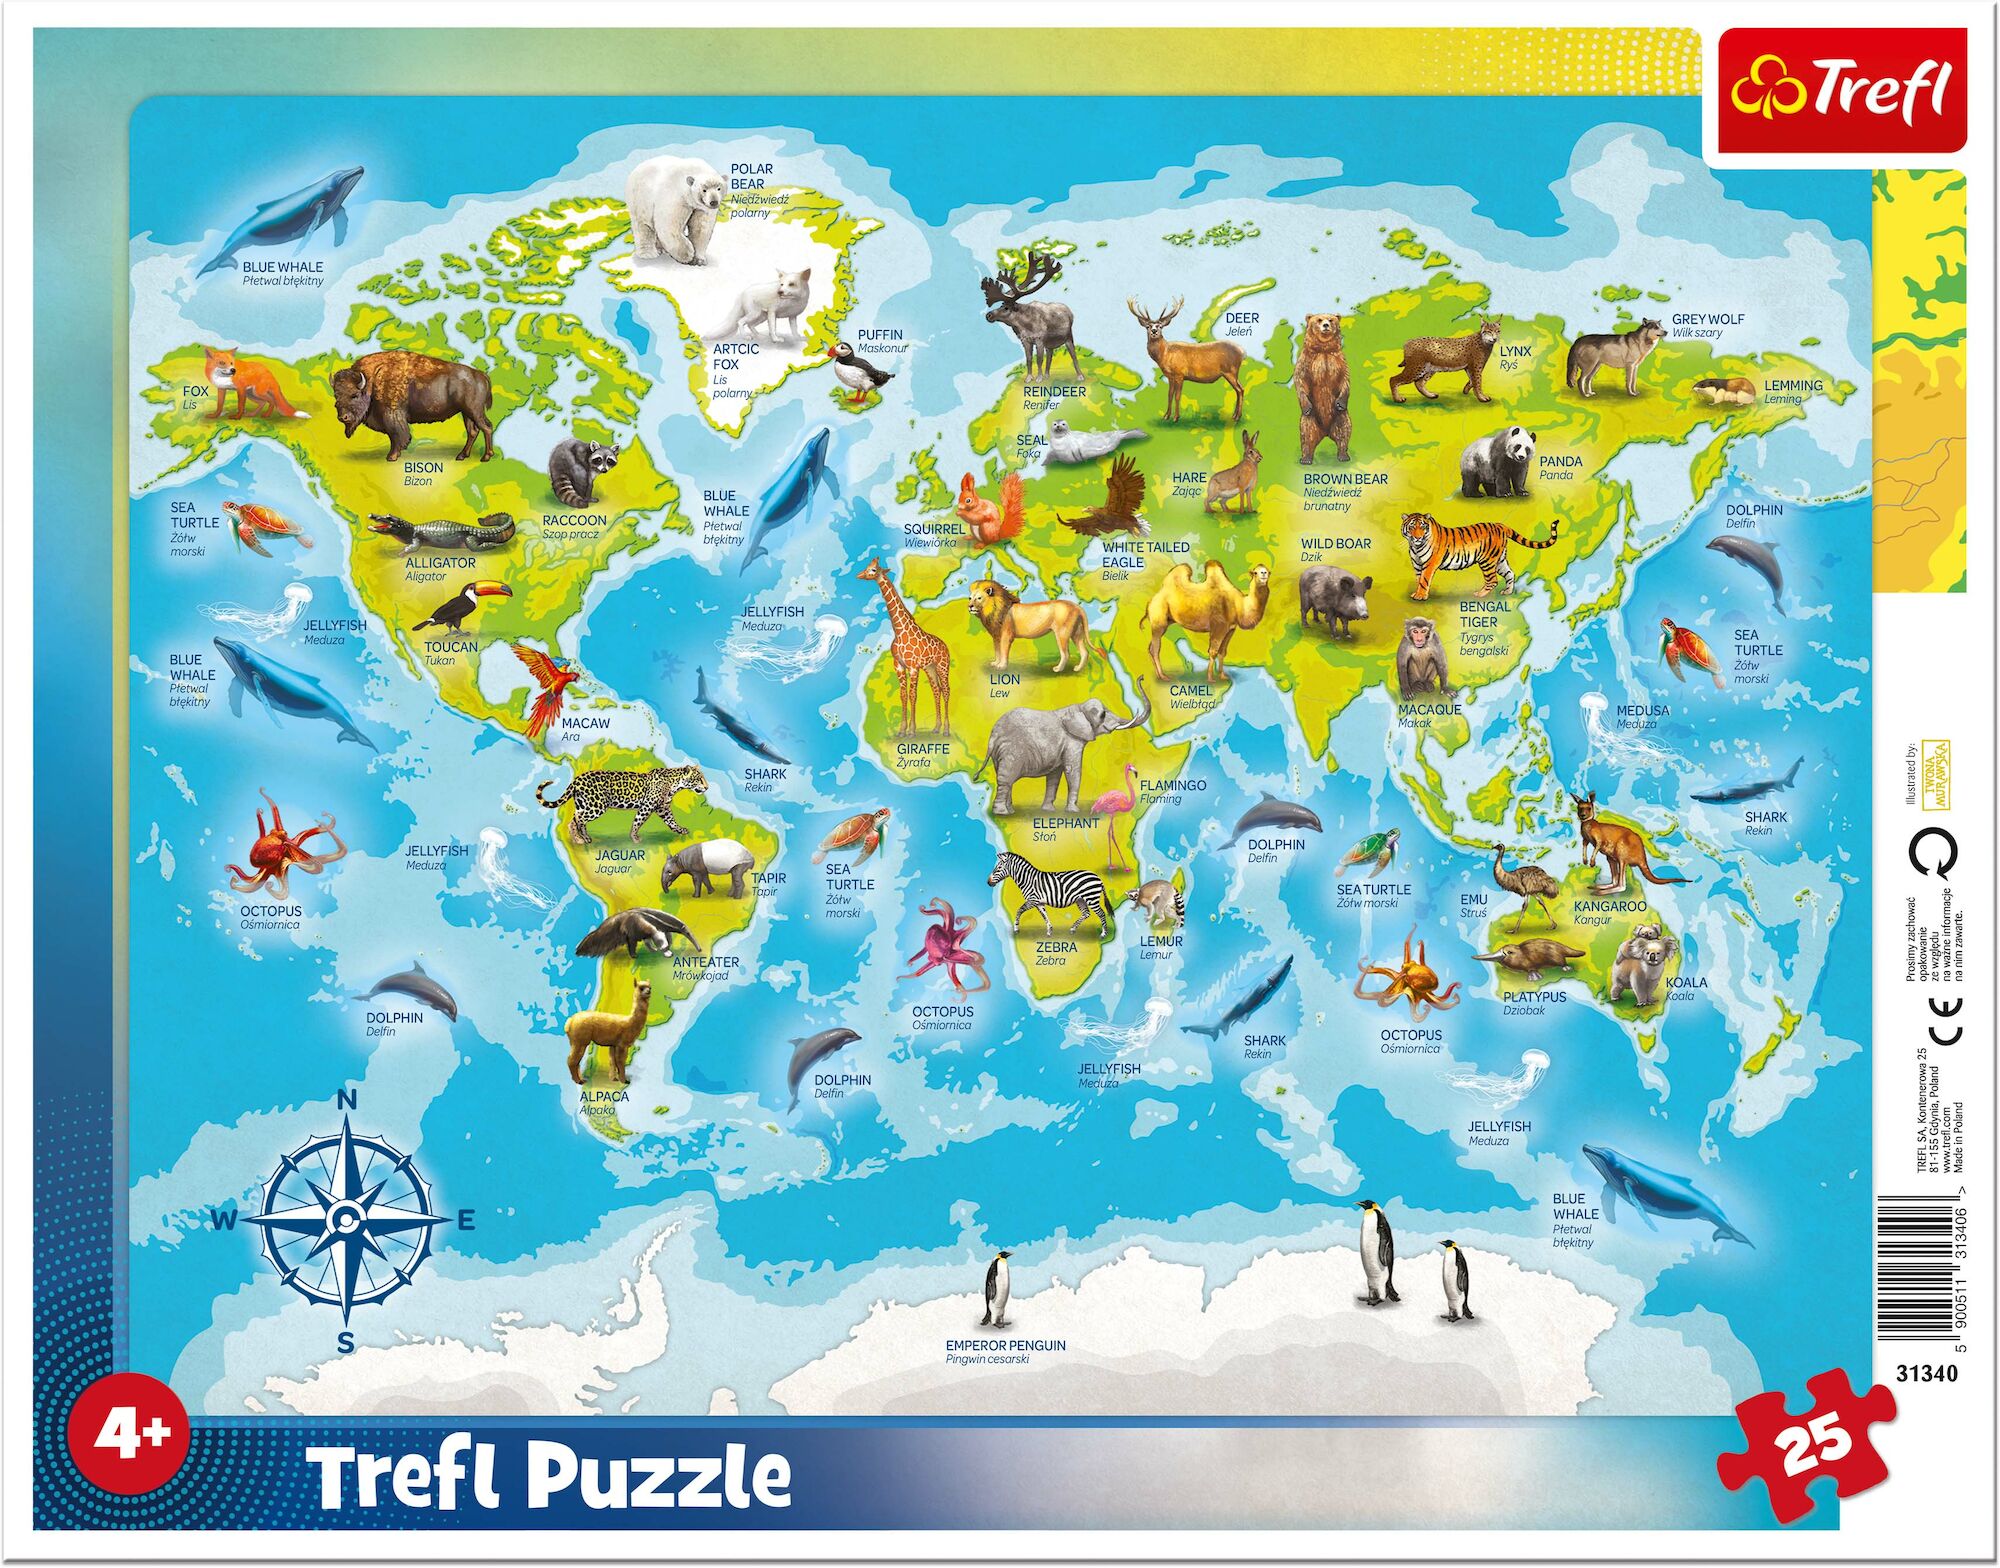 Trefl Rahmenpuzzle Weltkarte mit Tieren 25 Teile